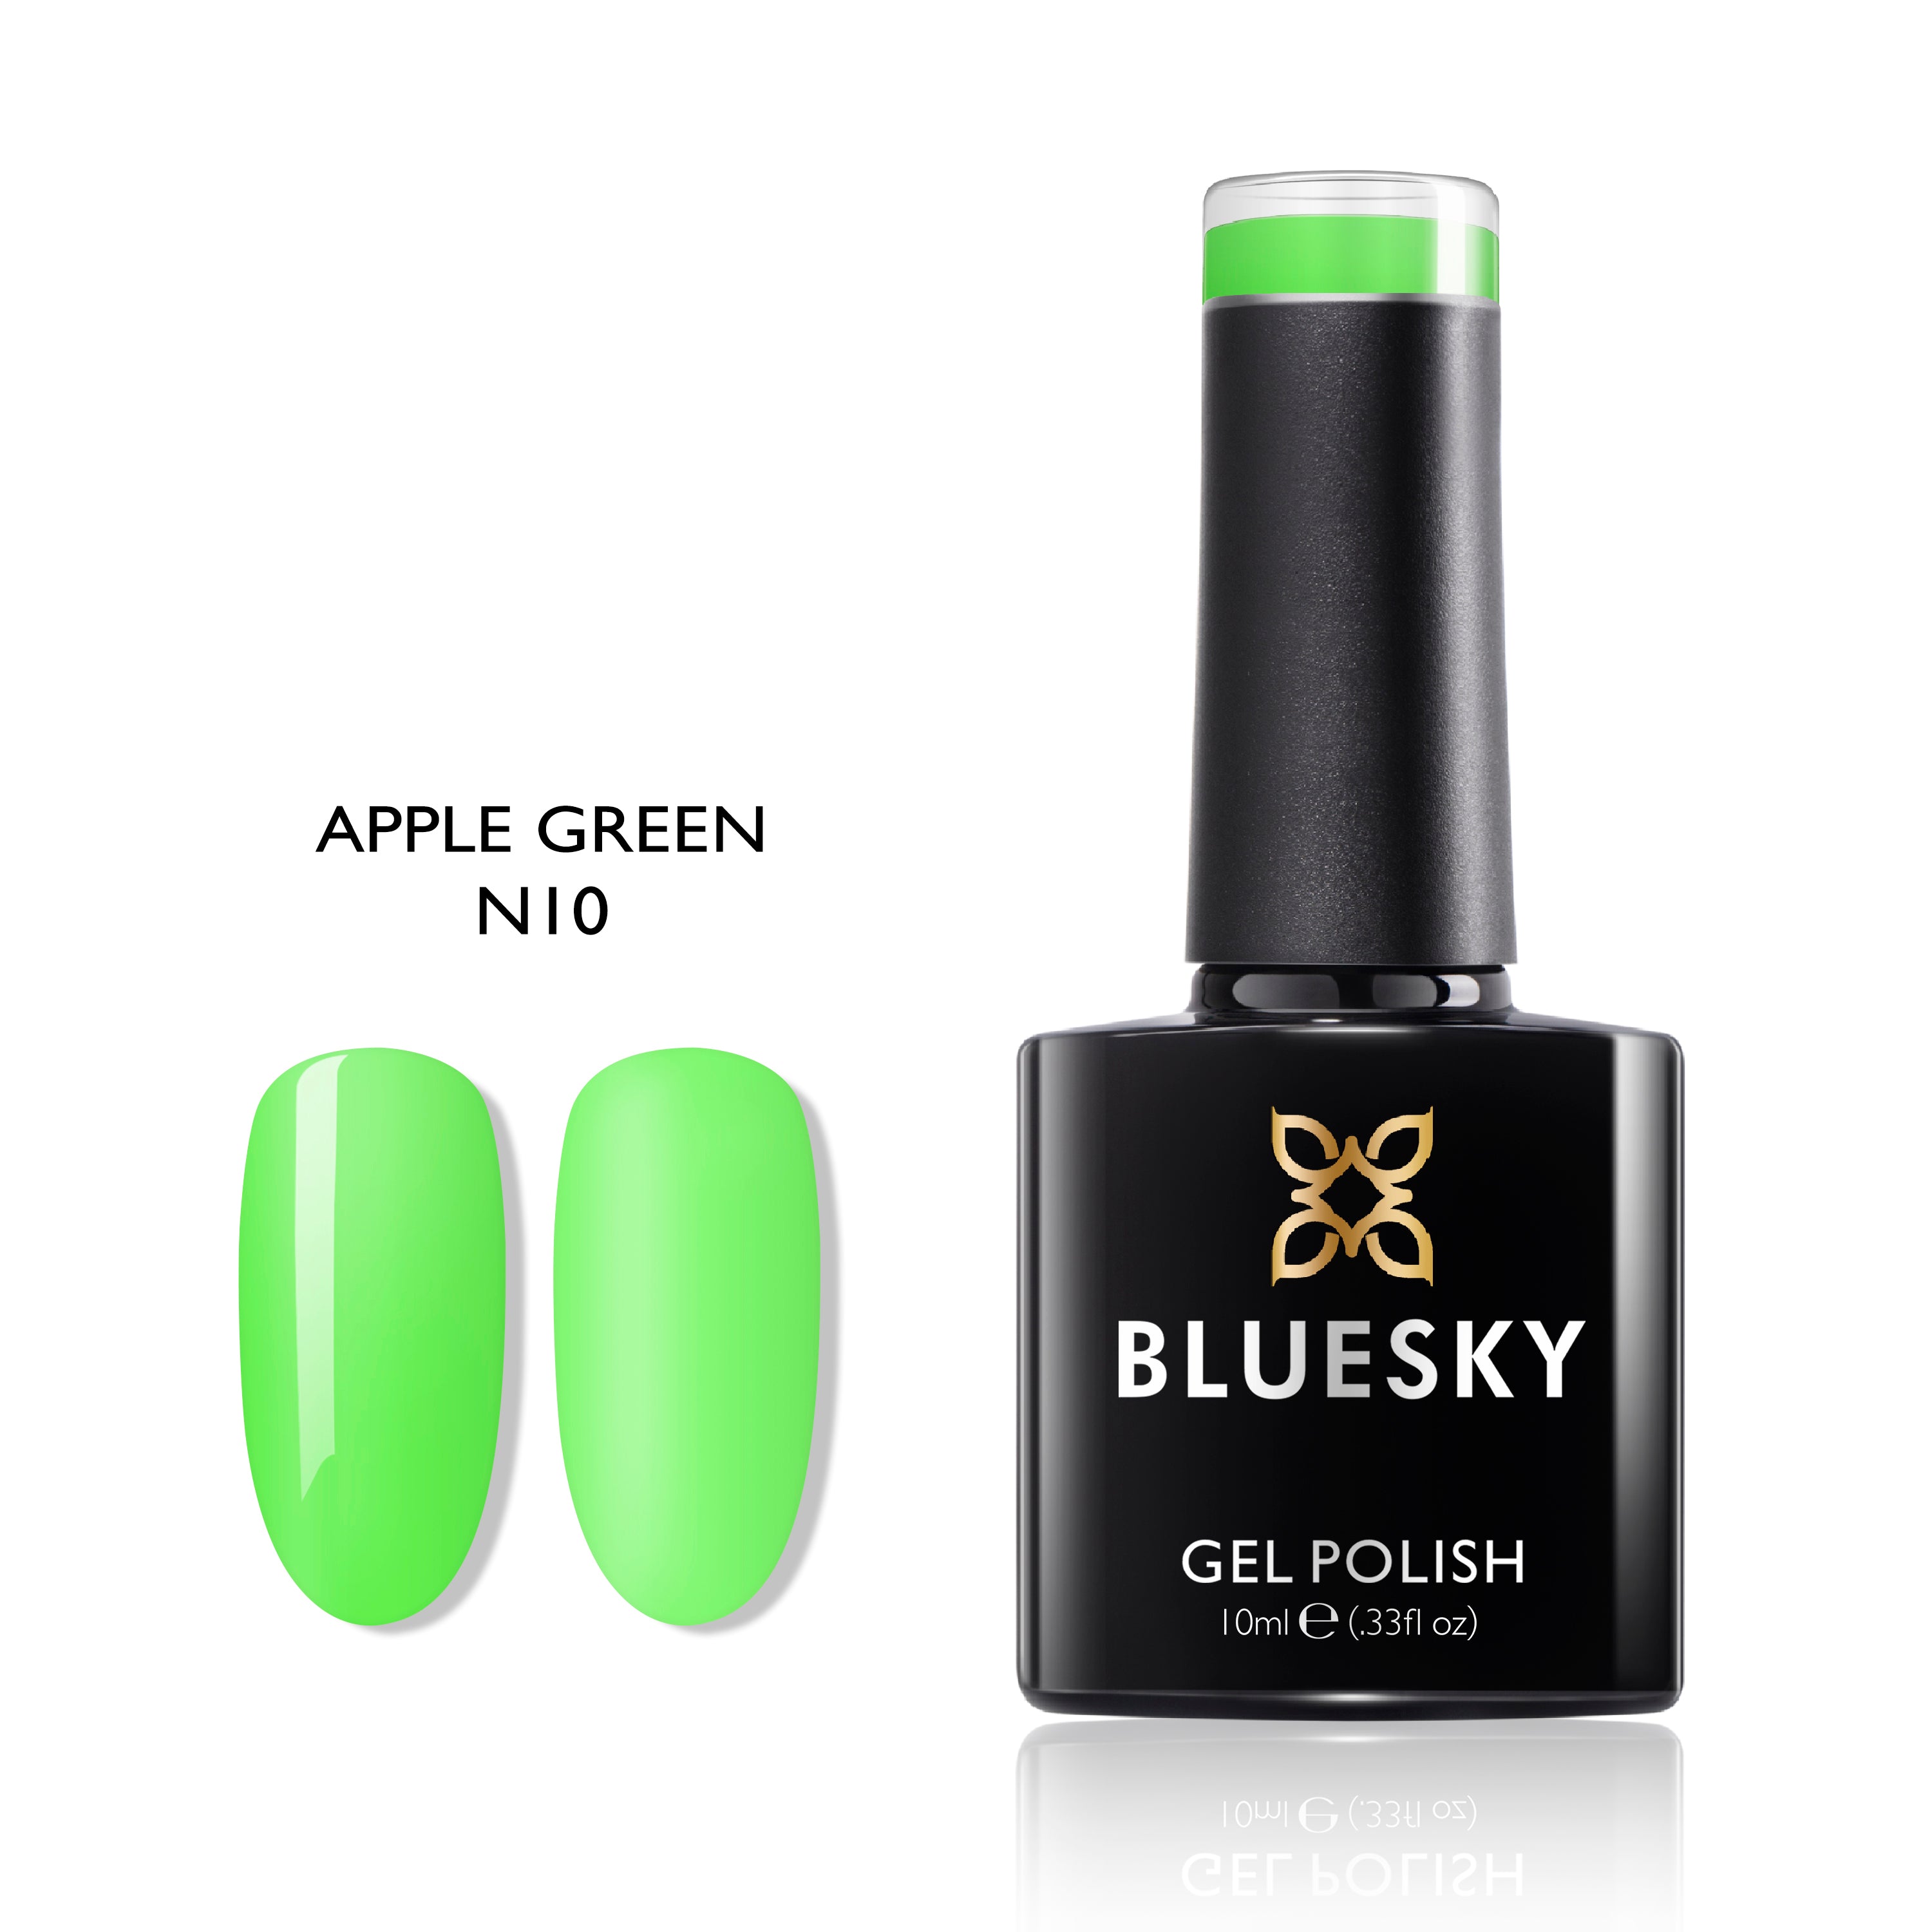 Apple Green - BLUESKY